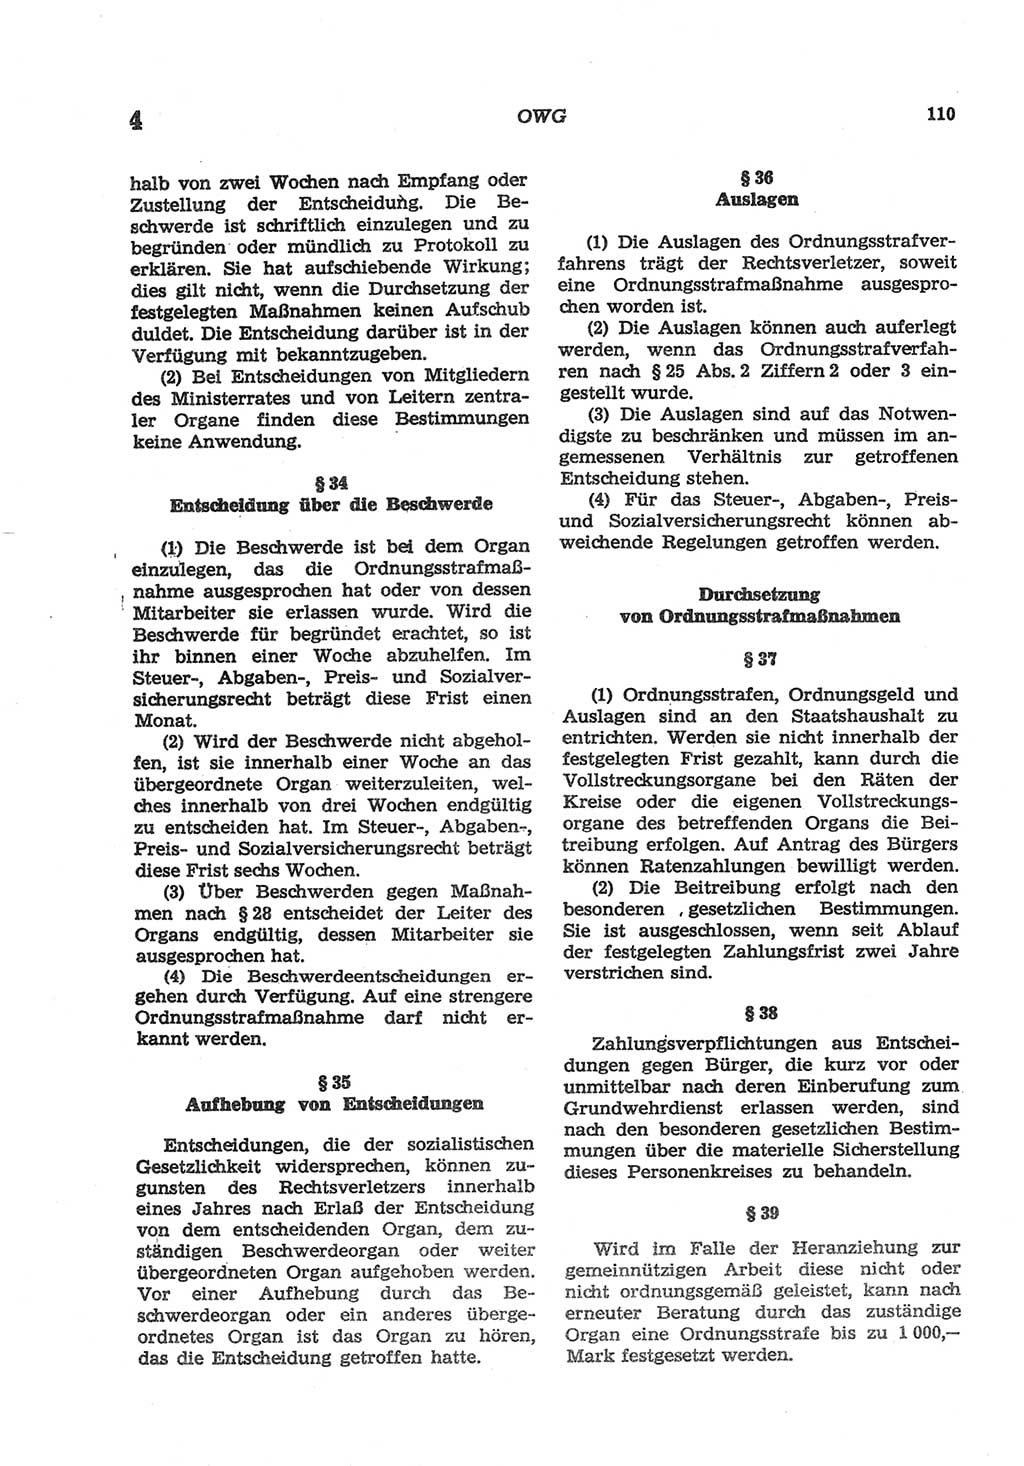 Strafgesetzbuch (StGB) der Deutschen Demokratischen Republik (DDR) und angrenzende Gesetze und Bestimmungen 1977, Seite 110 (StGB DDR Ges. Best. 1977, S. 110)